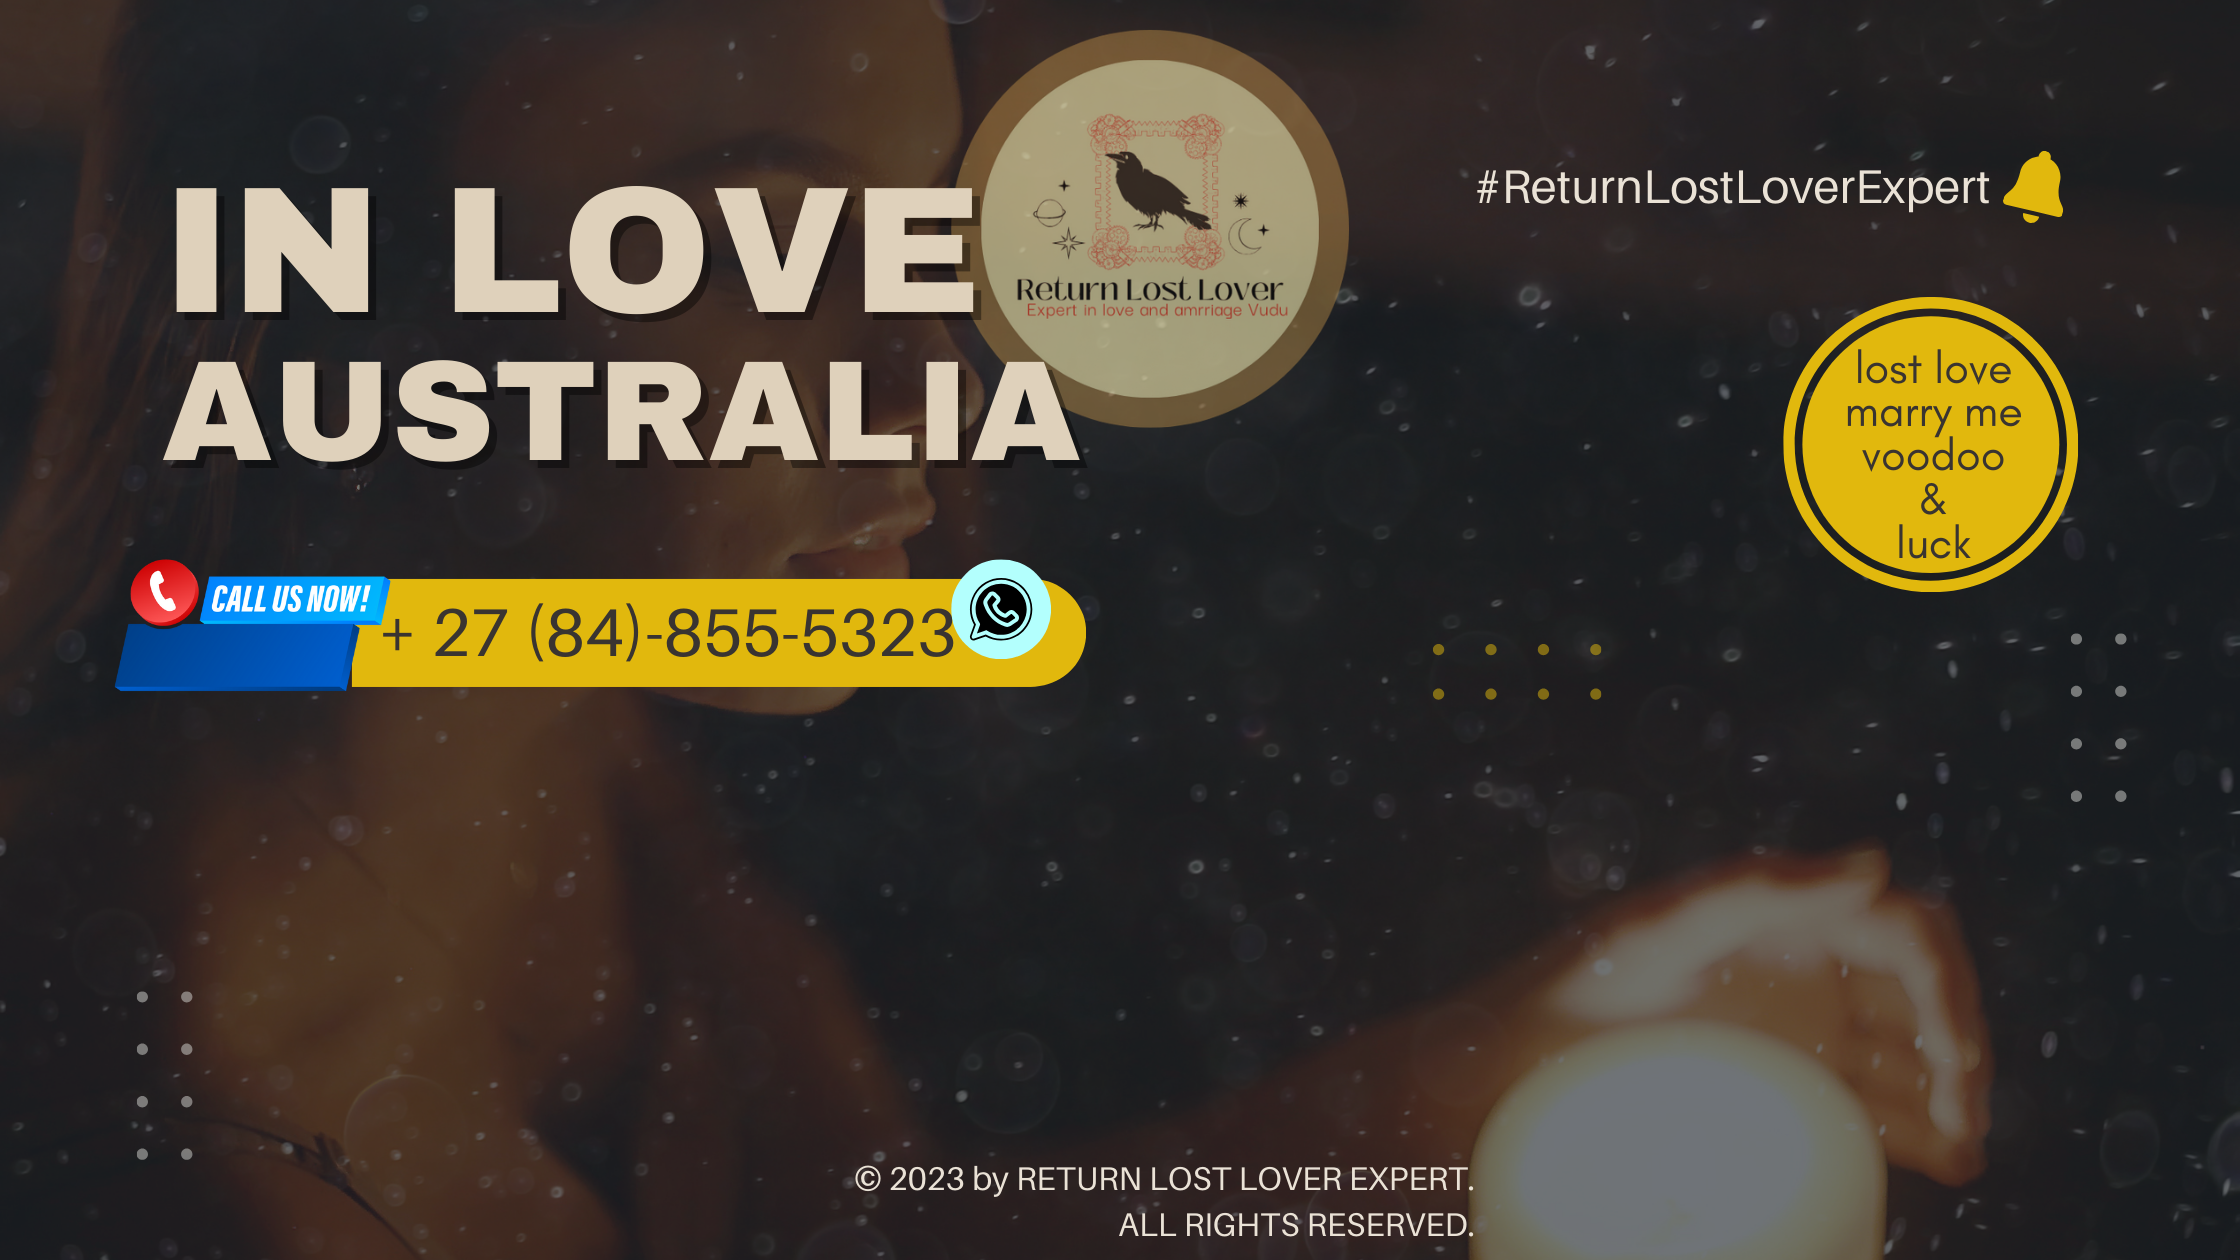 Love spell caster in Australia providing expert services